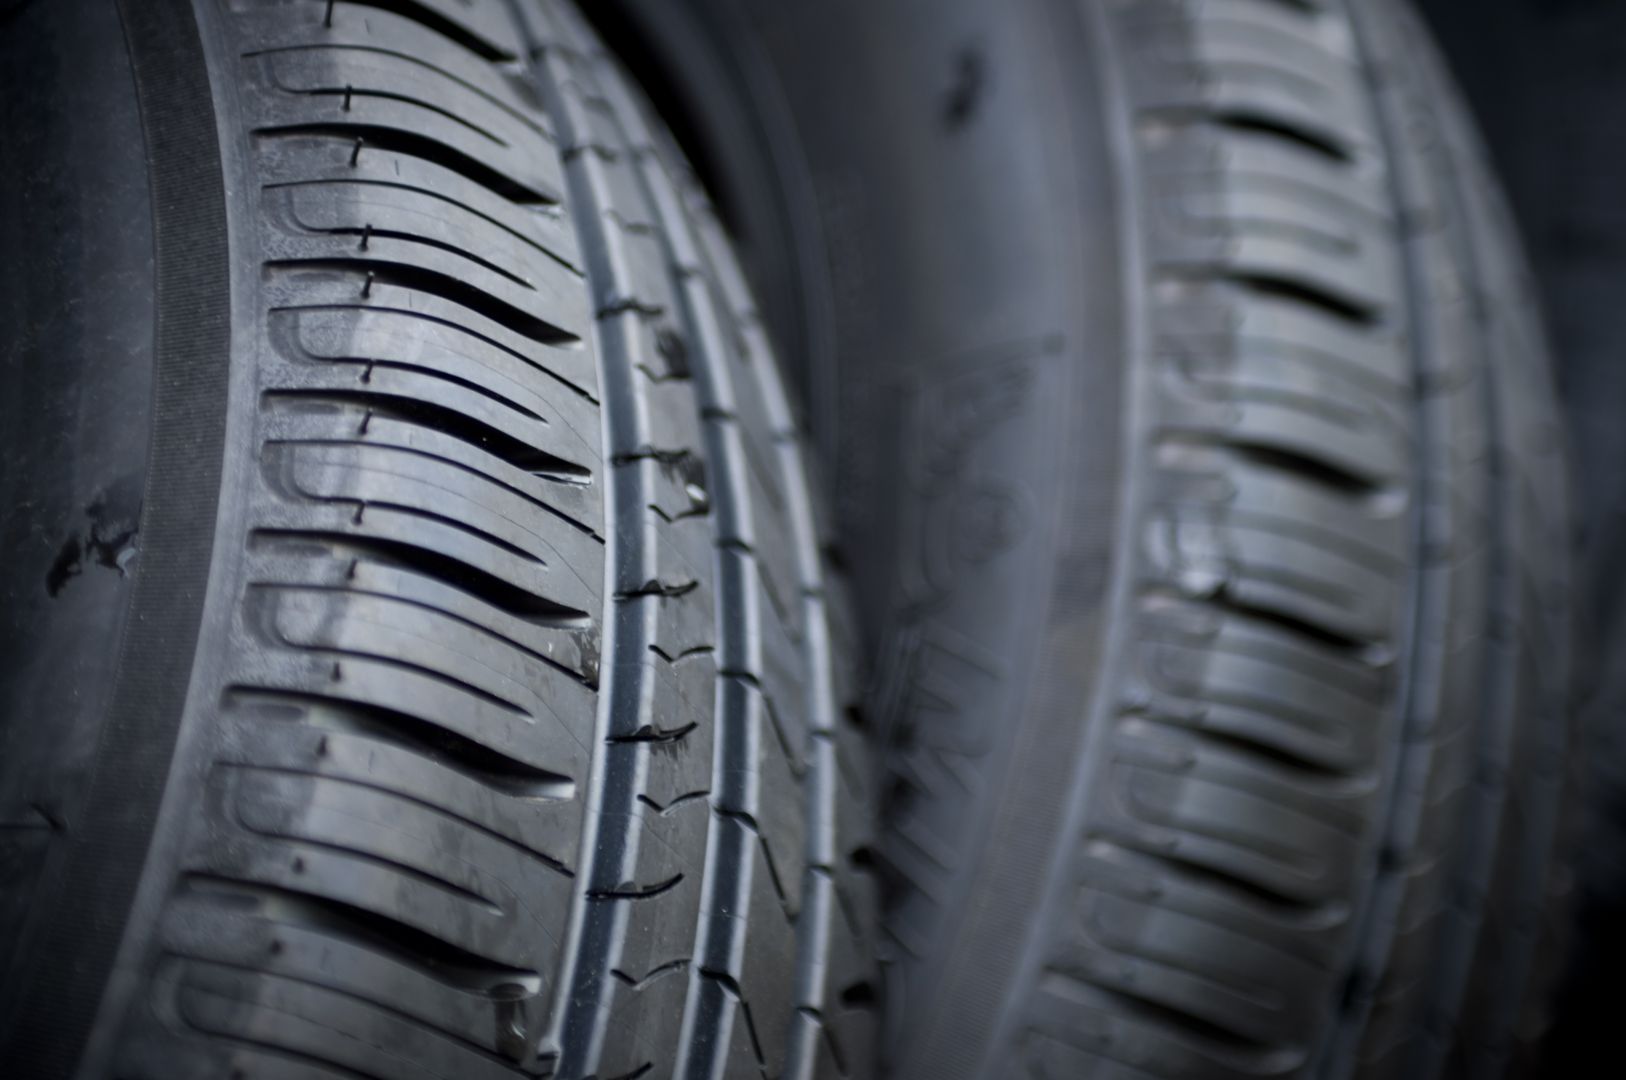 Poptávka na kompletace zimních pneumatik včetně nazutí a vyvážení (Pneuservis) - Karviná